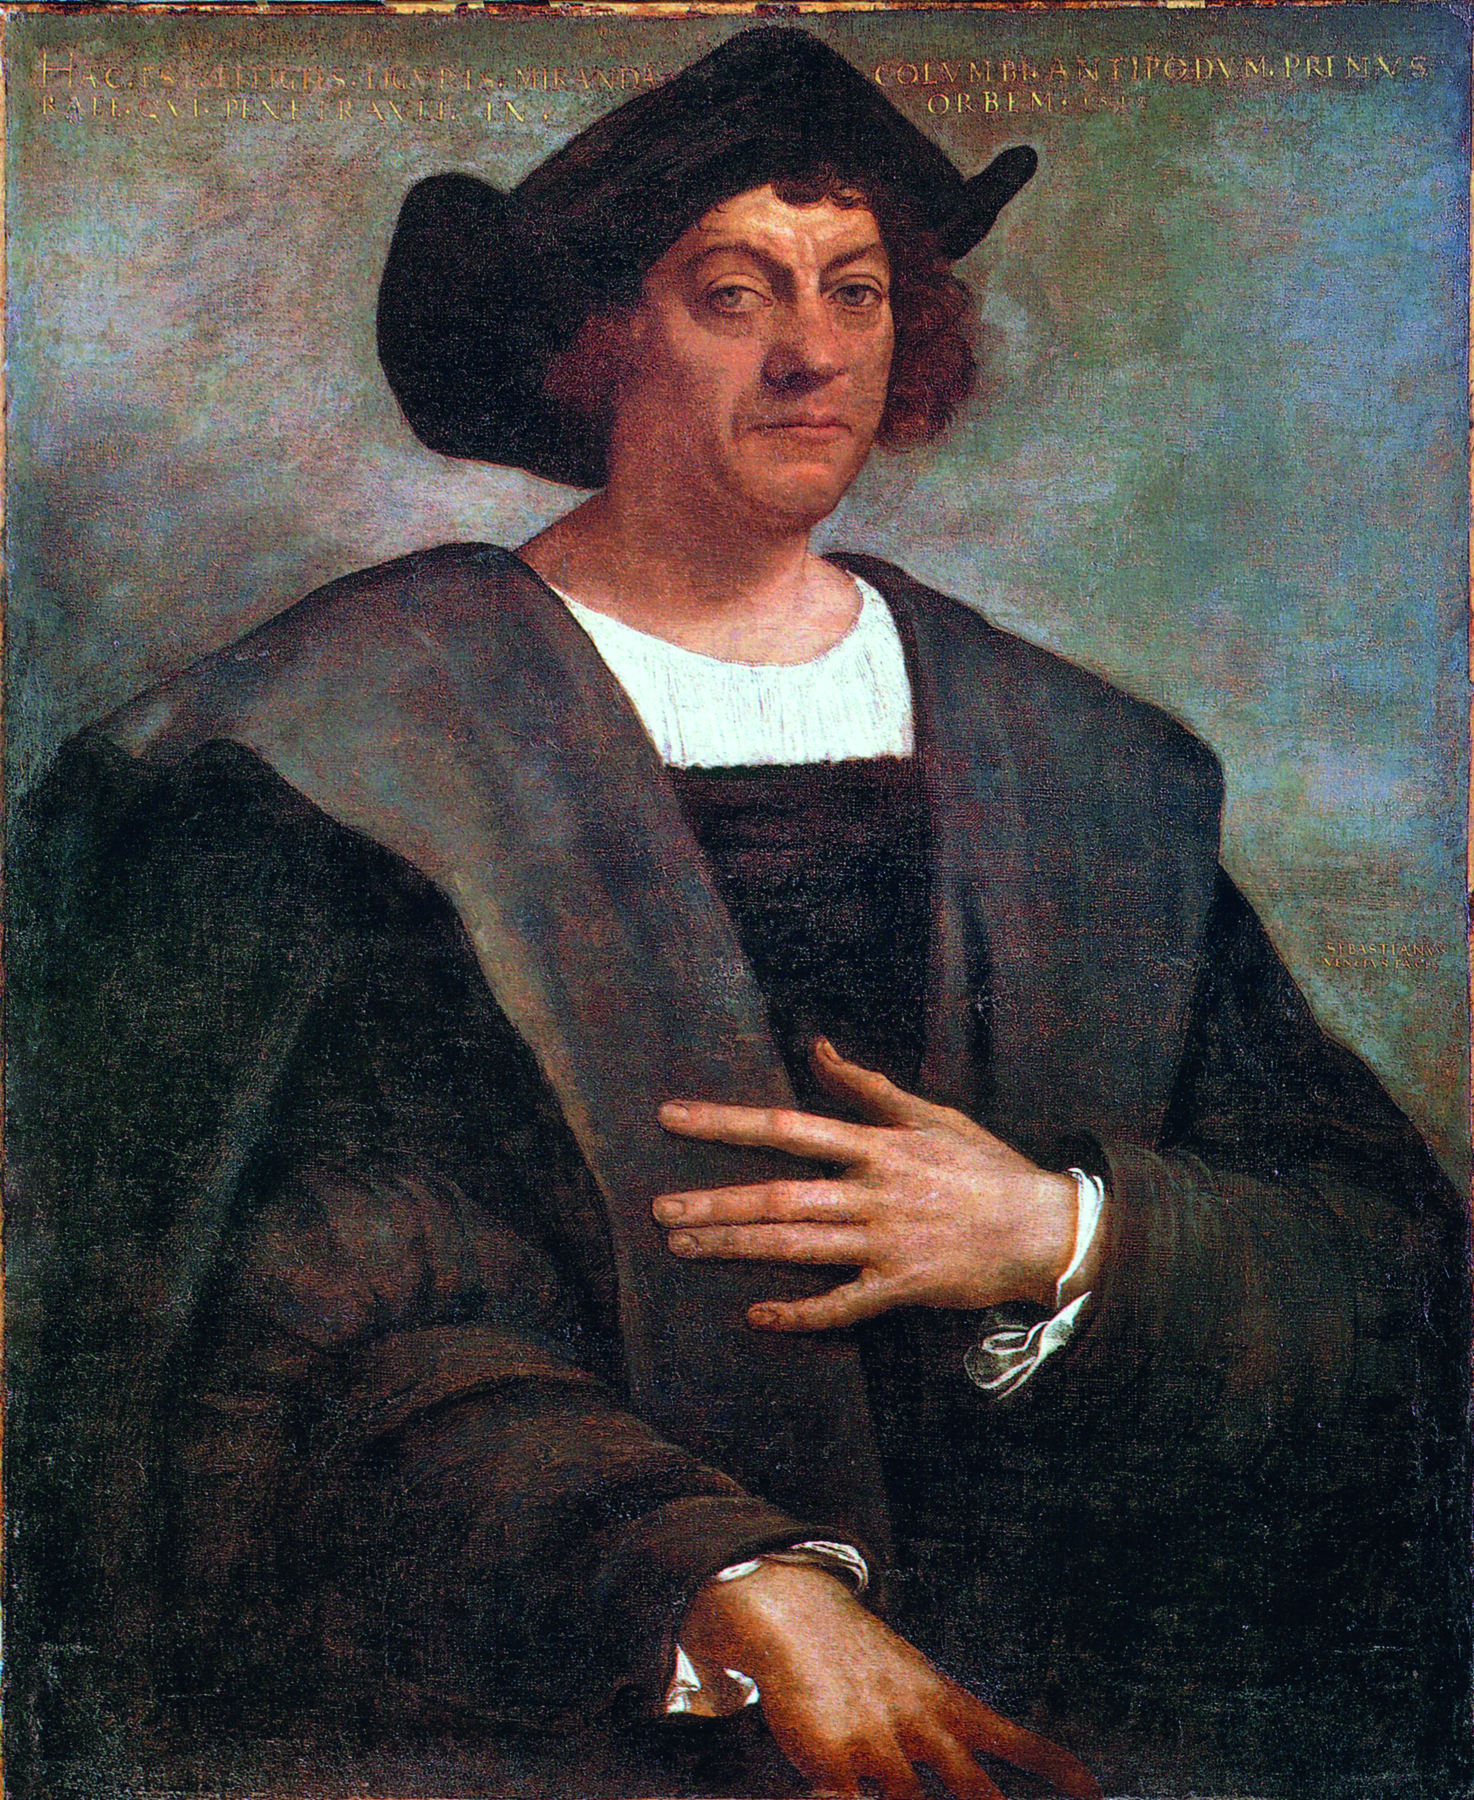 Pintura. Retrato de um homem branco com cabelos curtos e castanhos cobrindo as orelhas. Ele usa um chapéu preto de abas dobradas, uma camisa branca e um casaco marrom escuro bufante. A sua mão esquerda está sobre o peito.